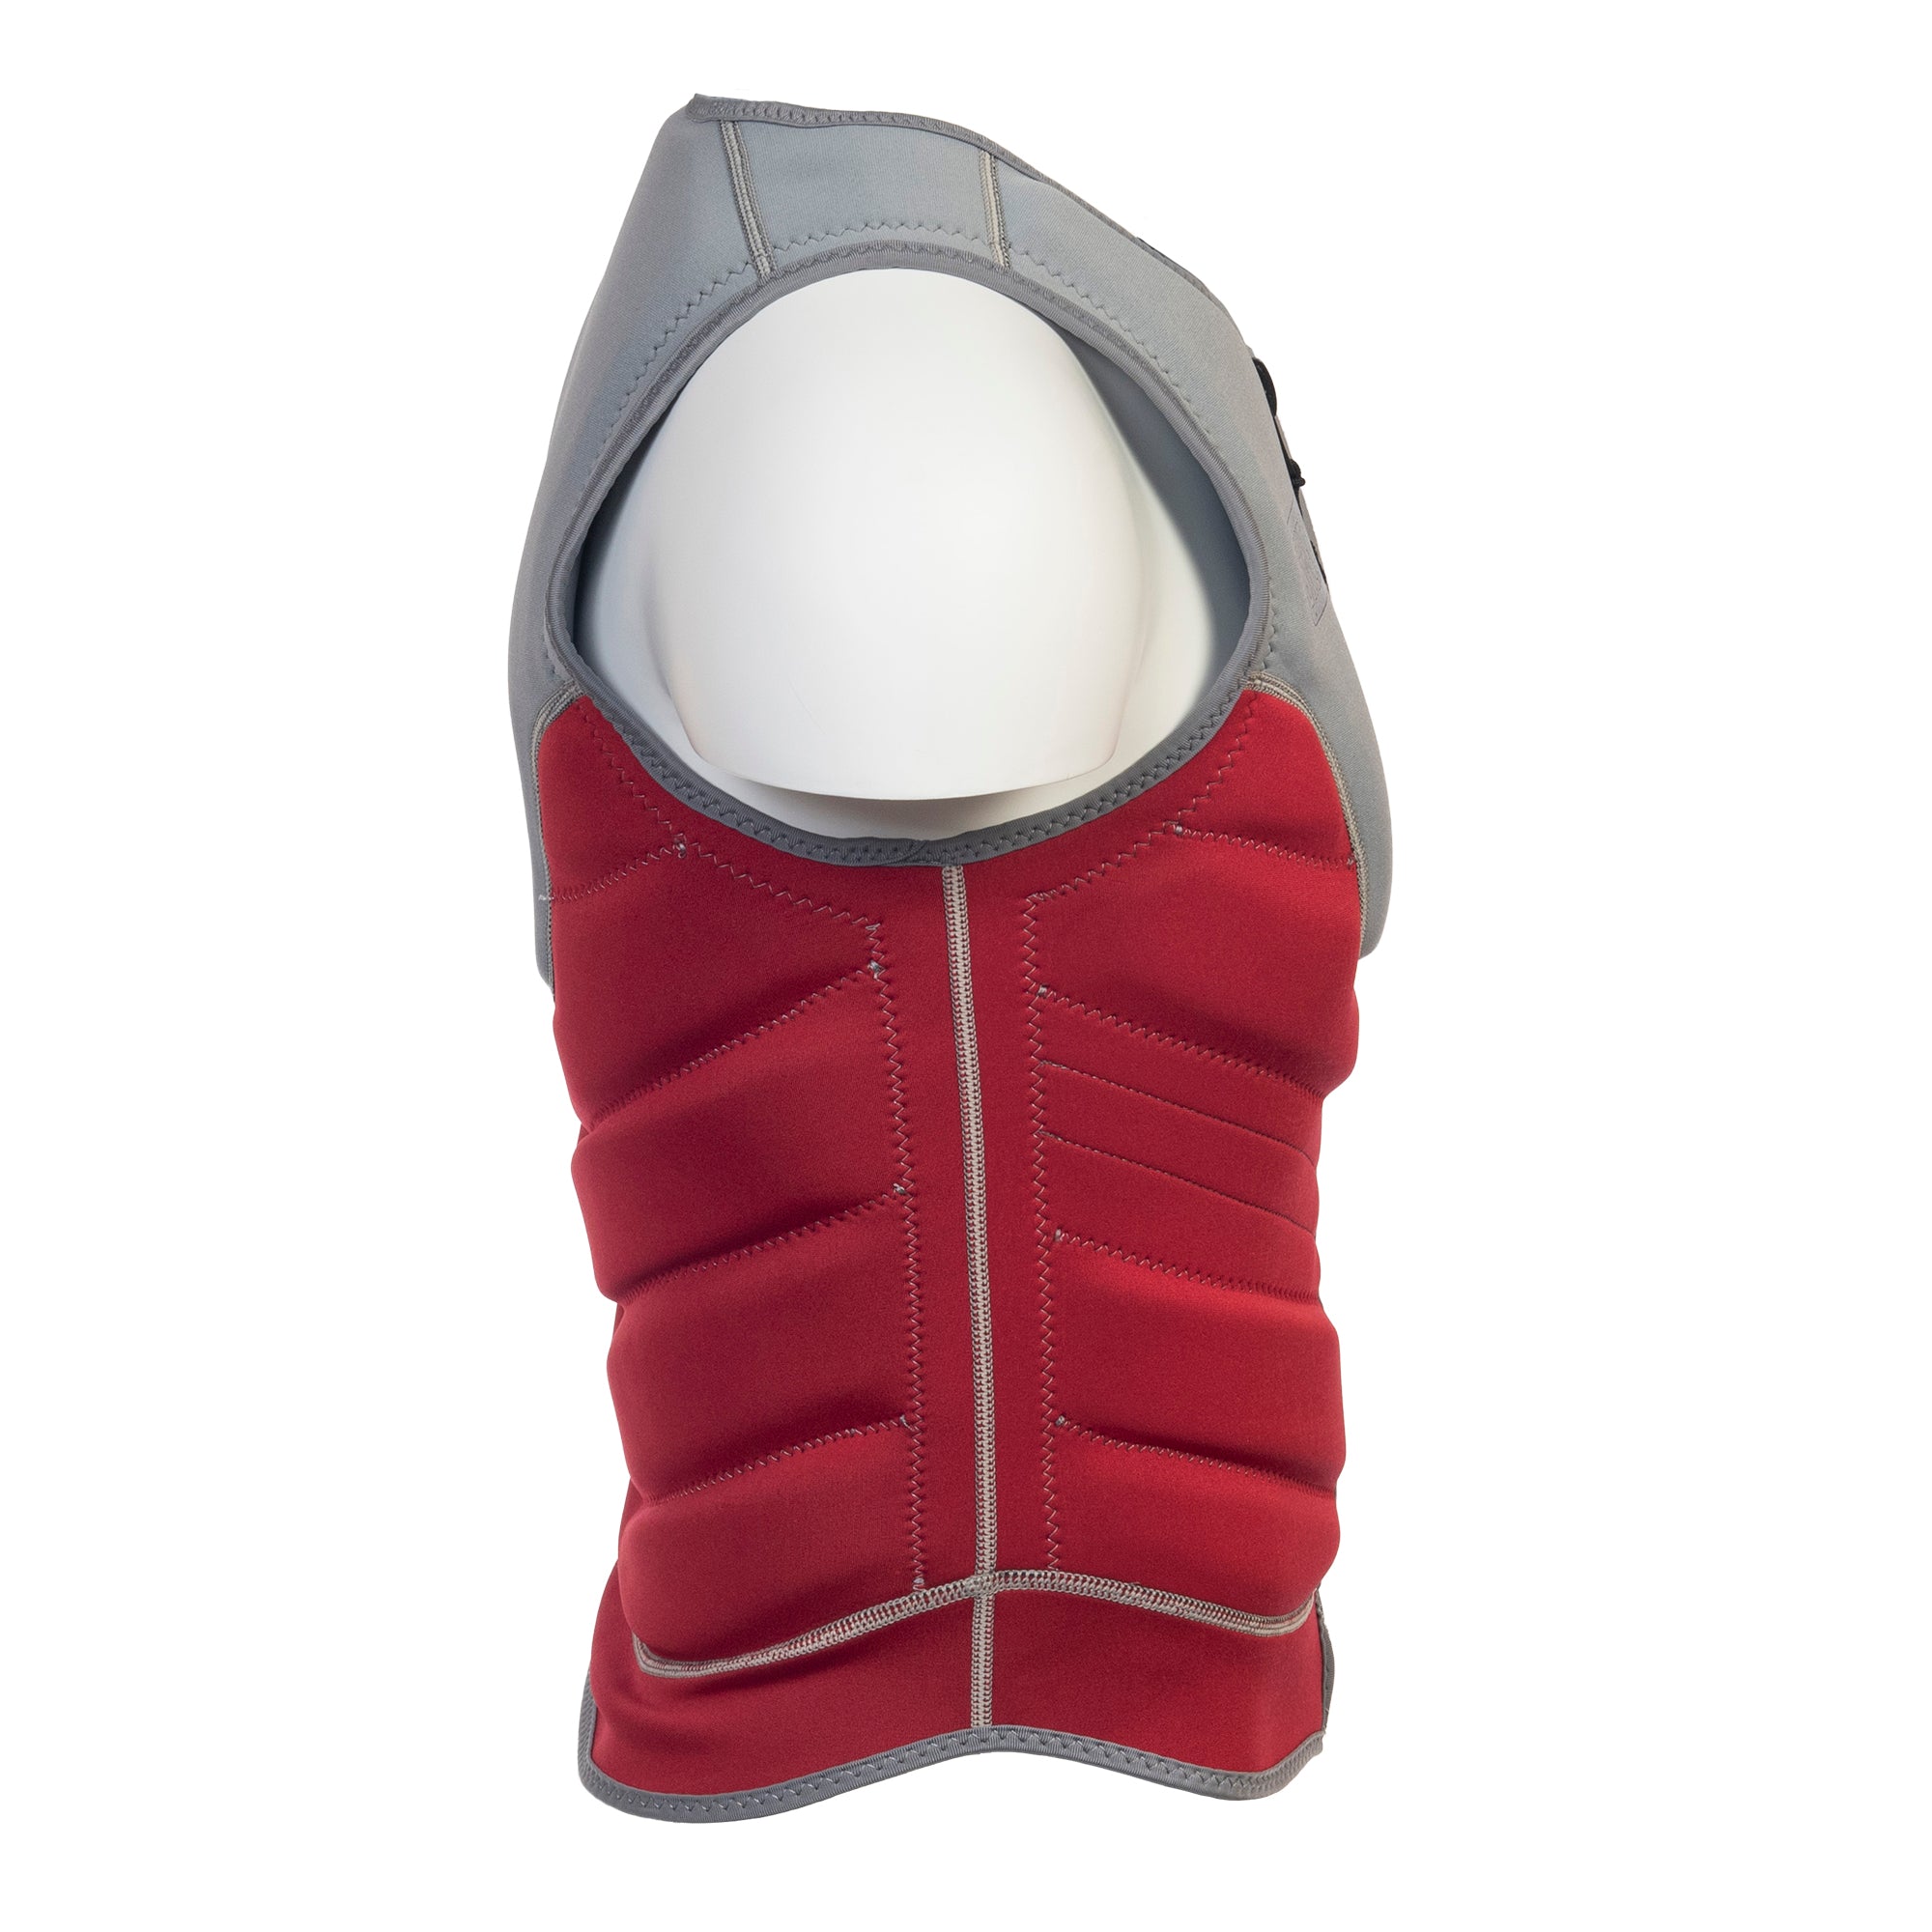 SWELL Comp Vest - Men's Red -  Neoprene Jacket - SWELL Wakesurf